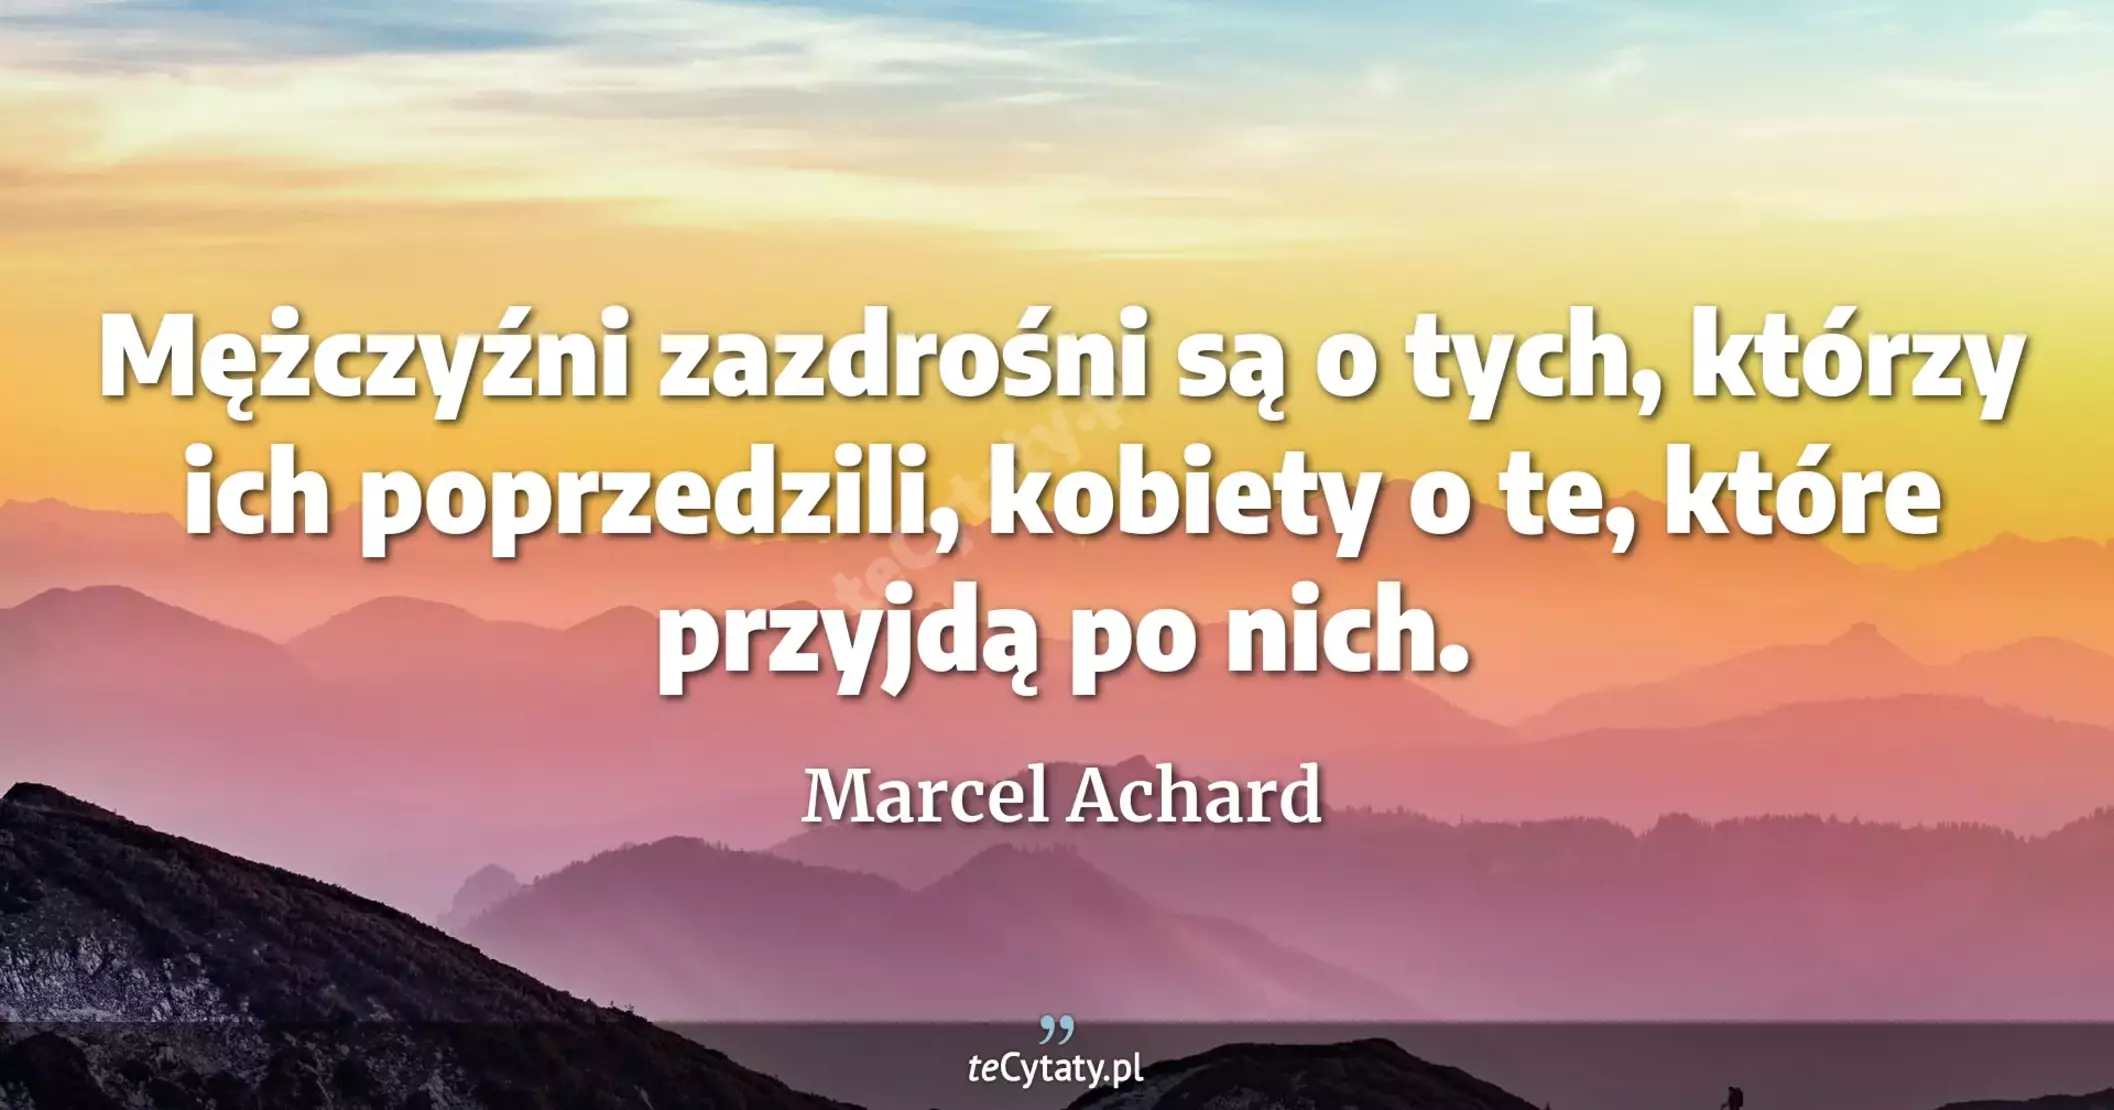 Mężczyźni zazdrośni są o tych, którzy ich poprzedzili, kobiety o te, które przyjdą po nich. - Marcel Achard